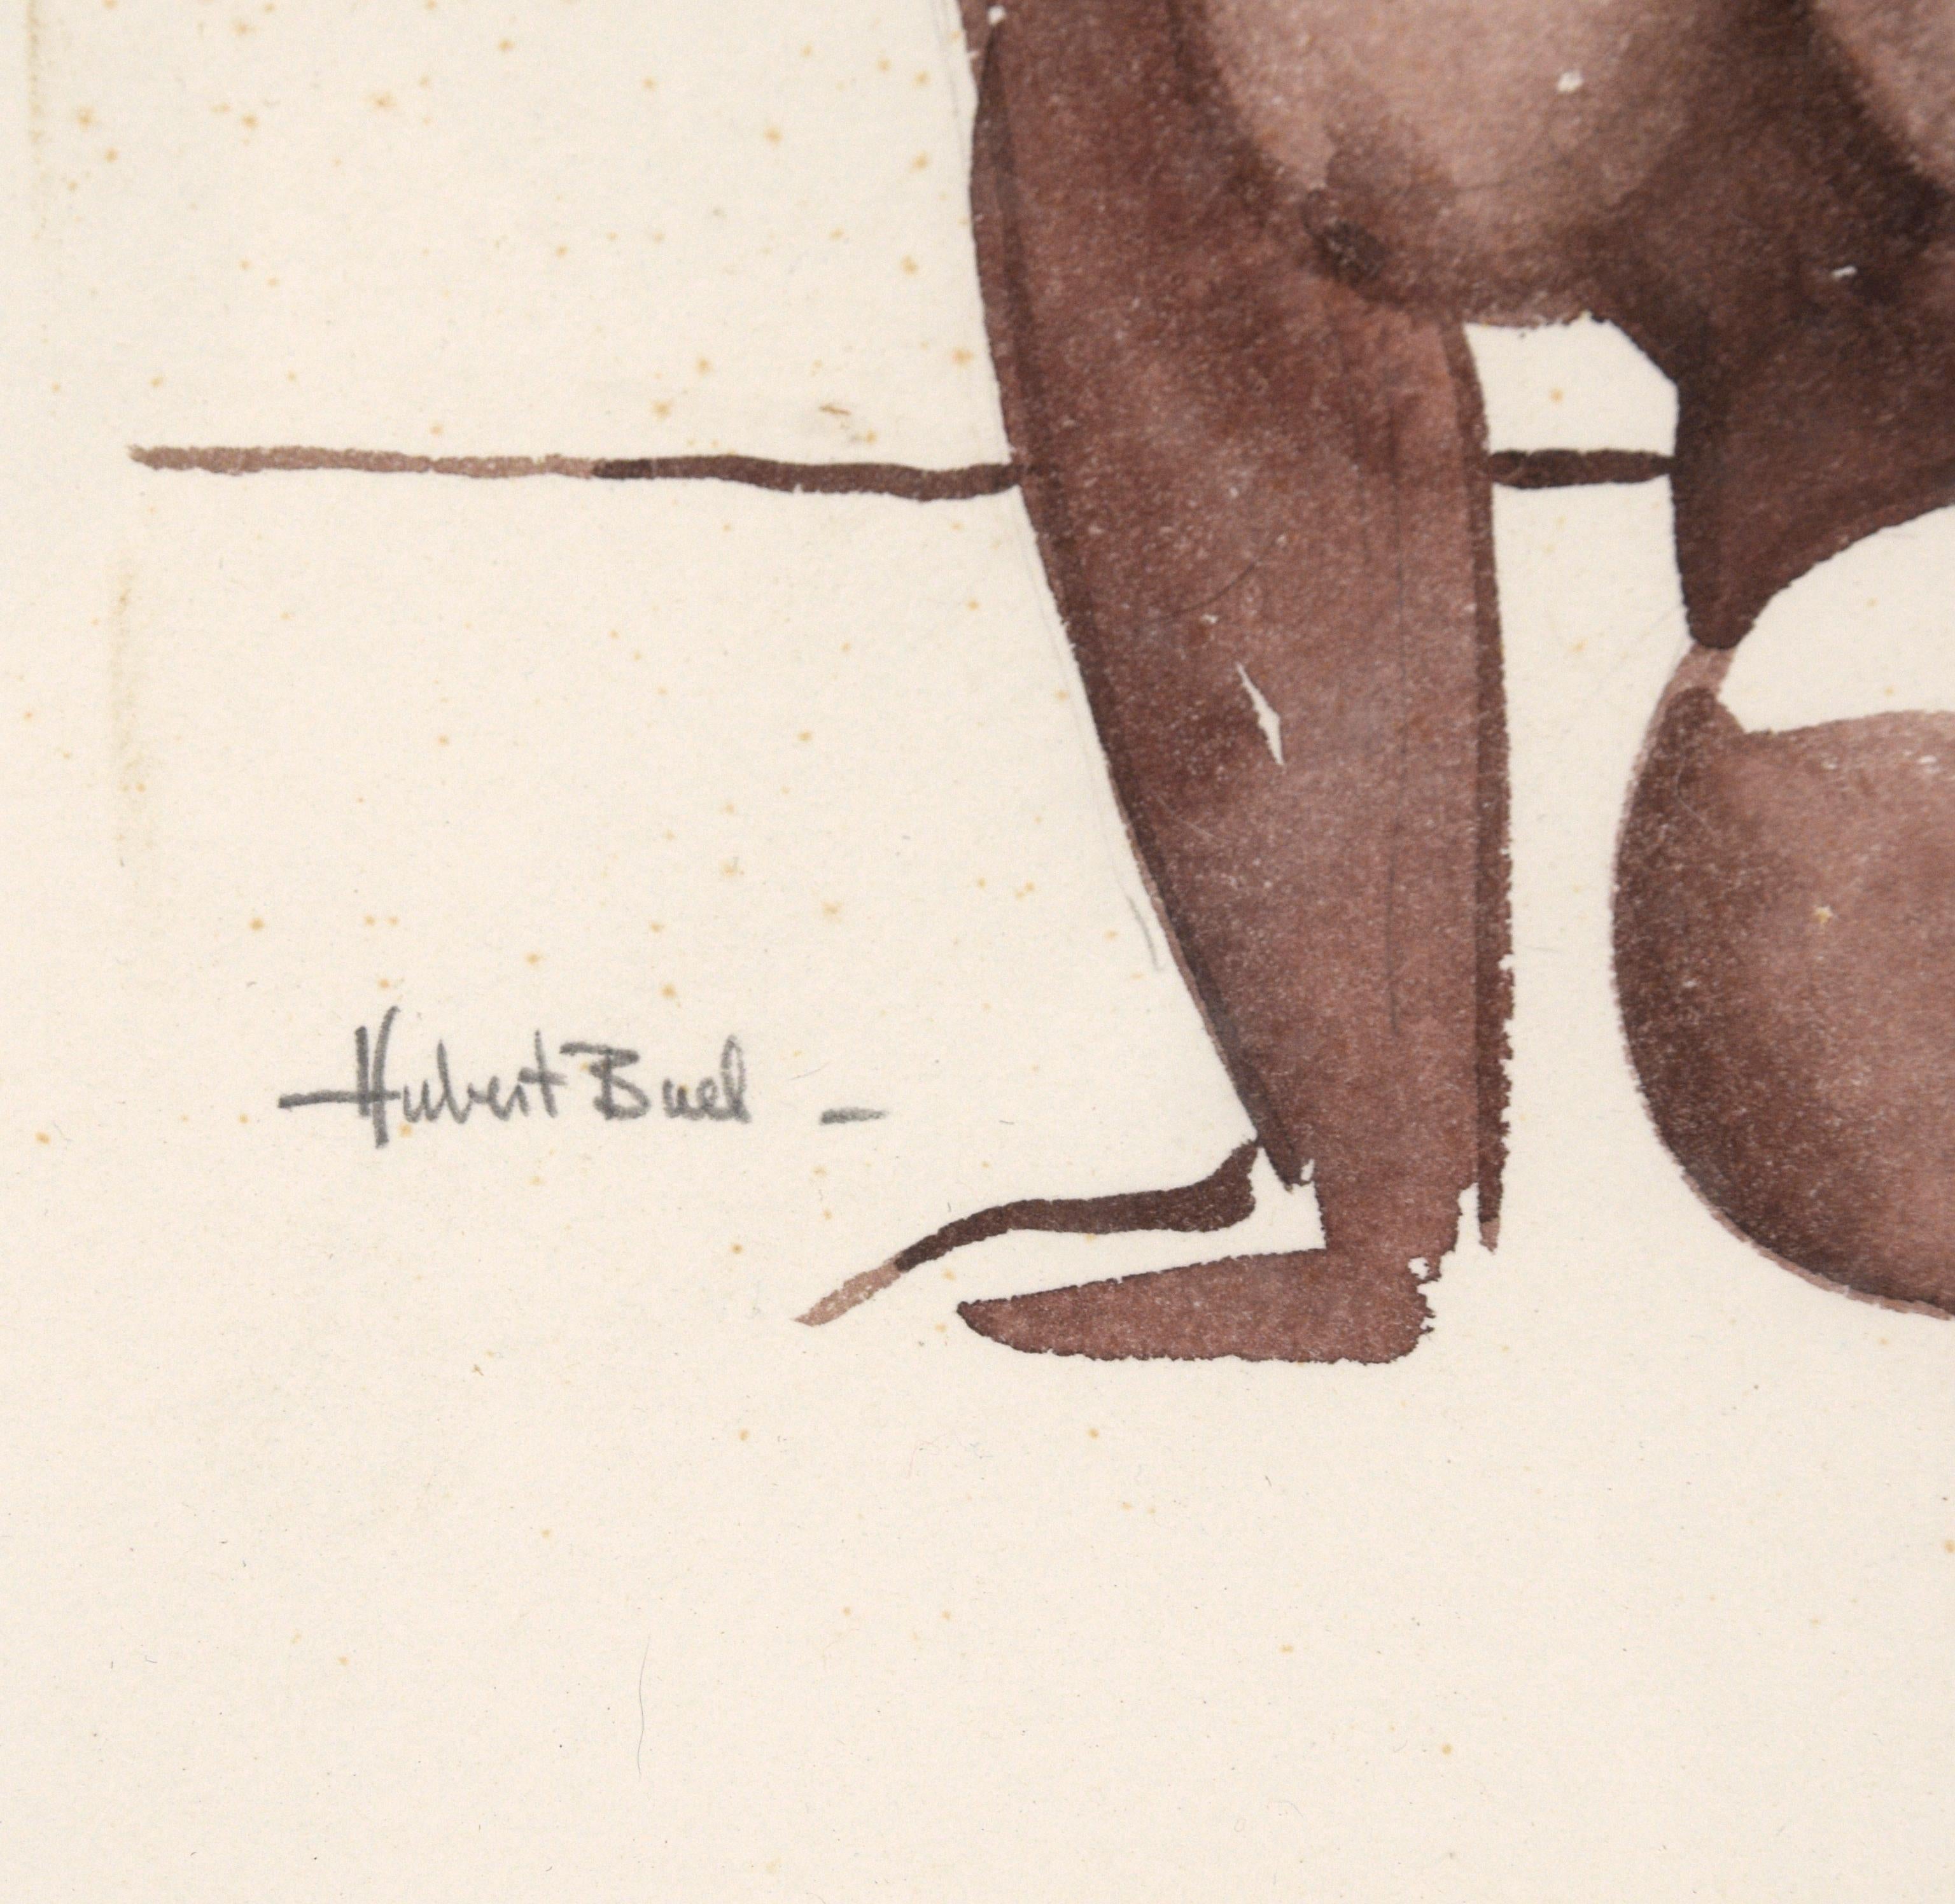 Étude de figure à l'aquarelle du milieu du siècle, une représentation vivante d'une femme nue allongée par l'artiste du Bay Area Figurative Movement Hubert Buel (américain, 1915-1984). Signé dans le coin inférieur gauche. Présenté dans un cadre en